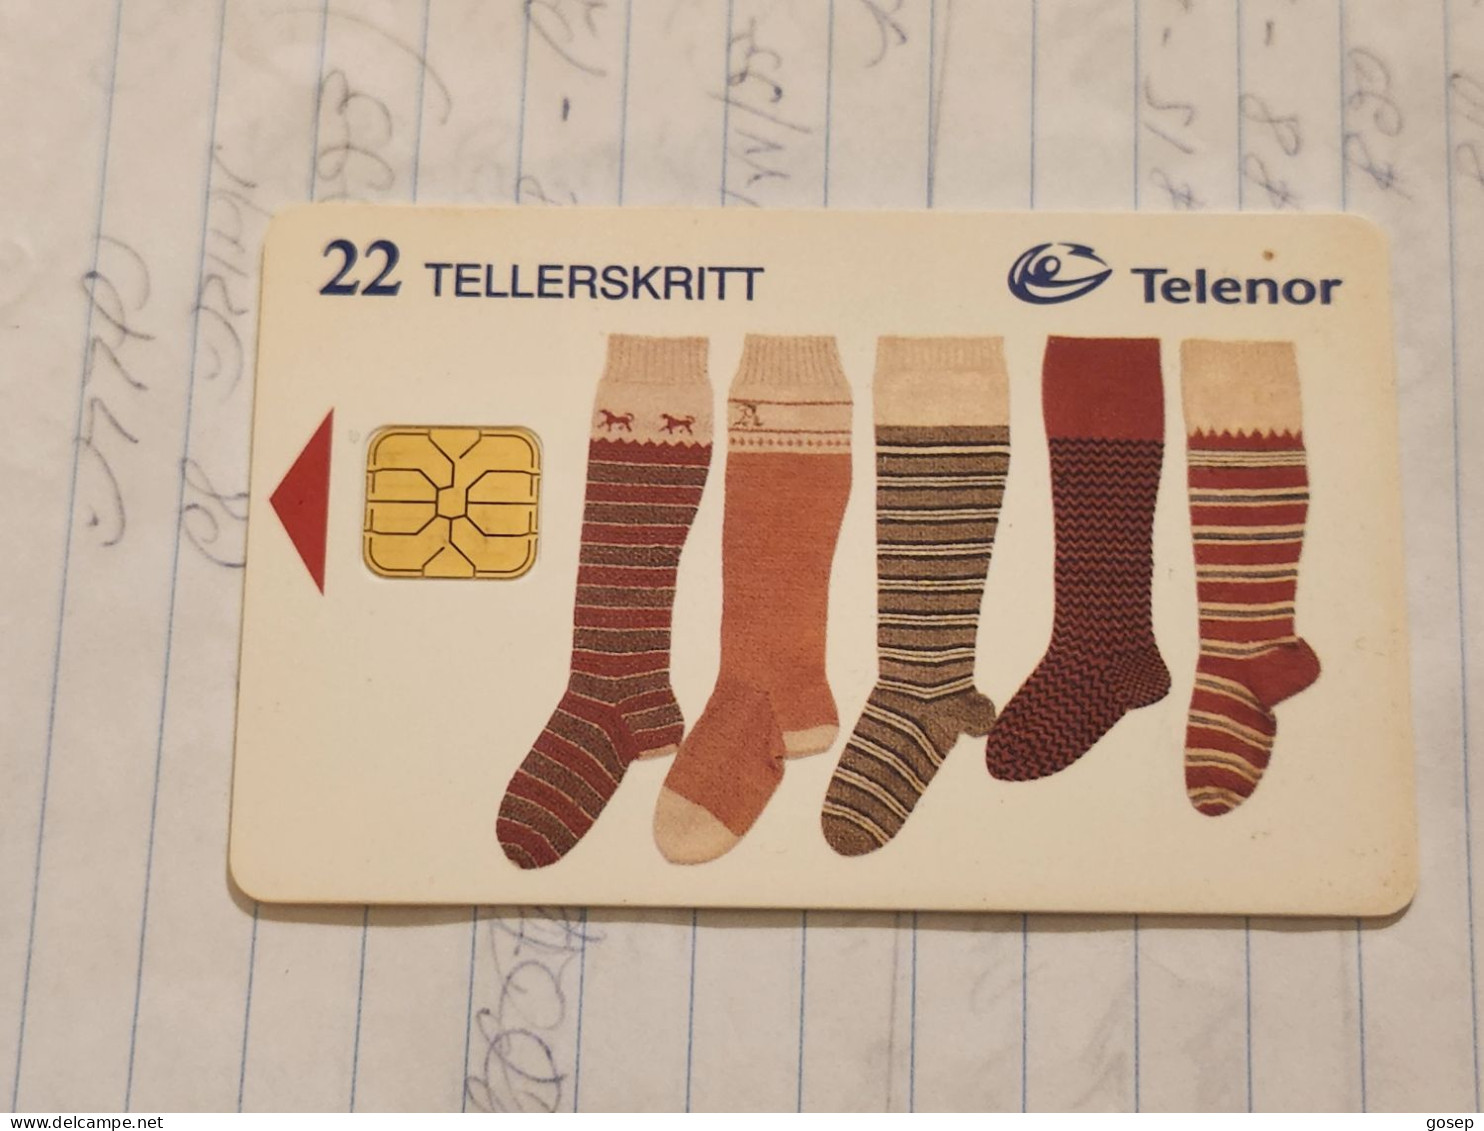 Norway-(N-103)-Jul 1997 Stromper-(22 Tellerskritt)-(64)-(?)-used Card+1card Prepiad Free - Norway